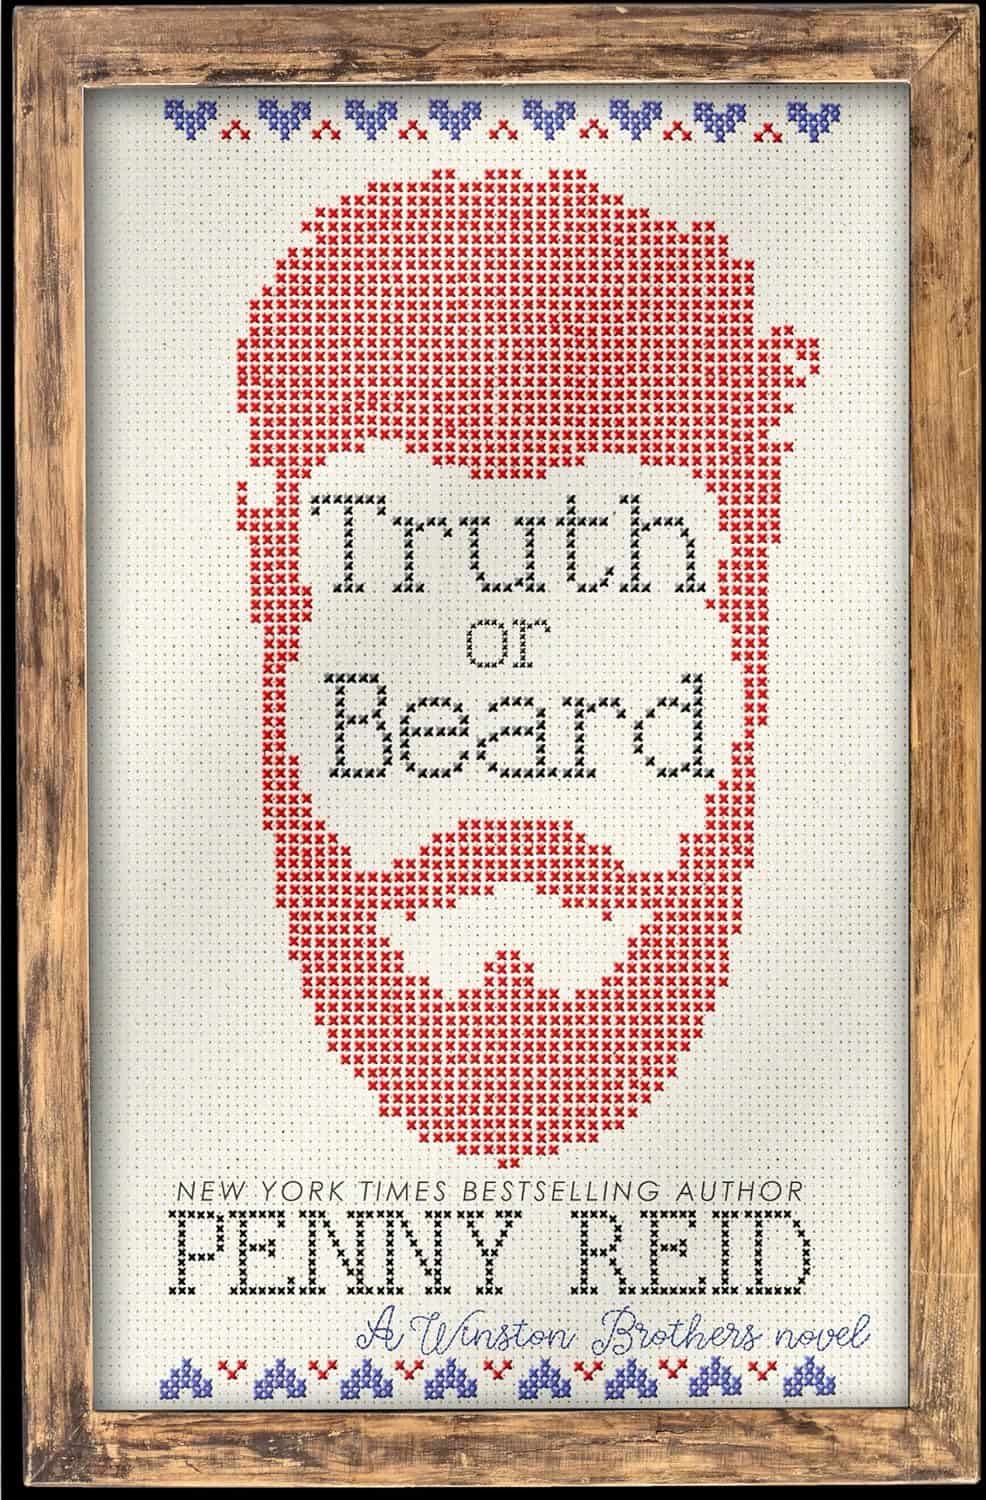 Truth or Beard by Penny Reid